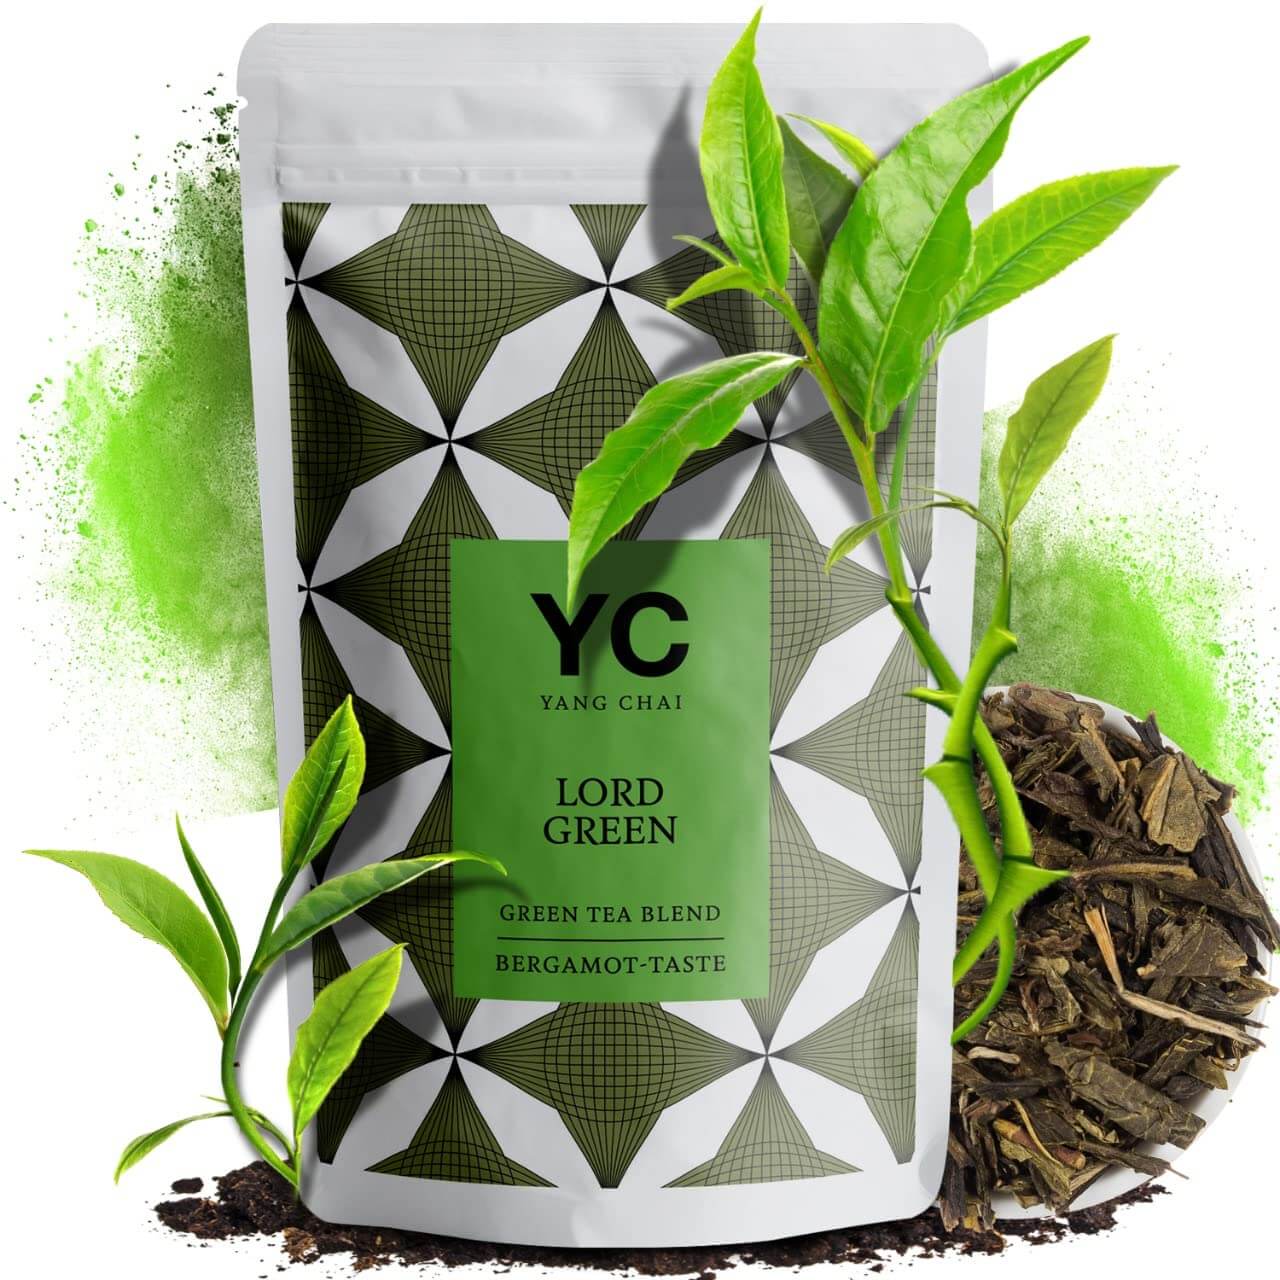 Grüner Tee Lose mit Bergamot Geschmack Grüntee "Lord Green" von Yang Chai